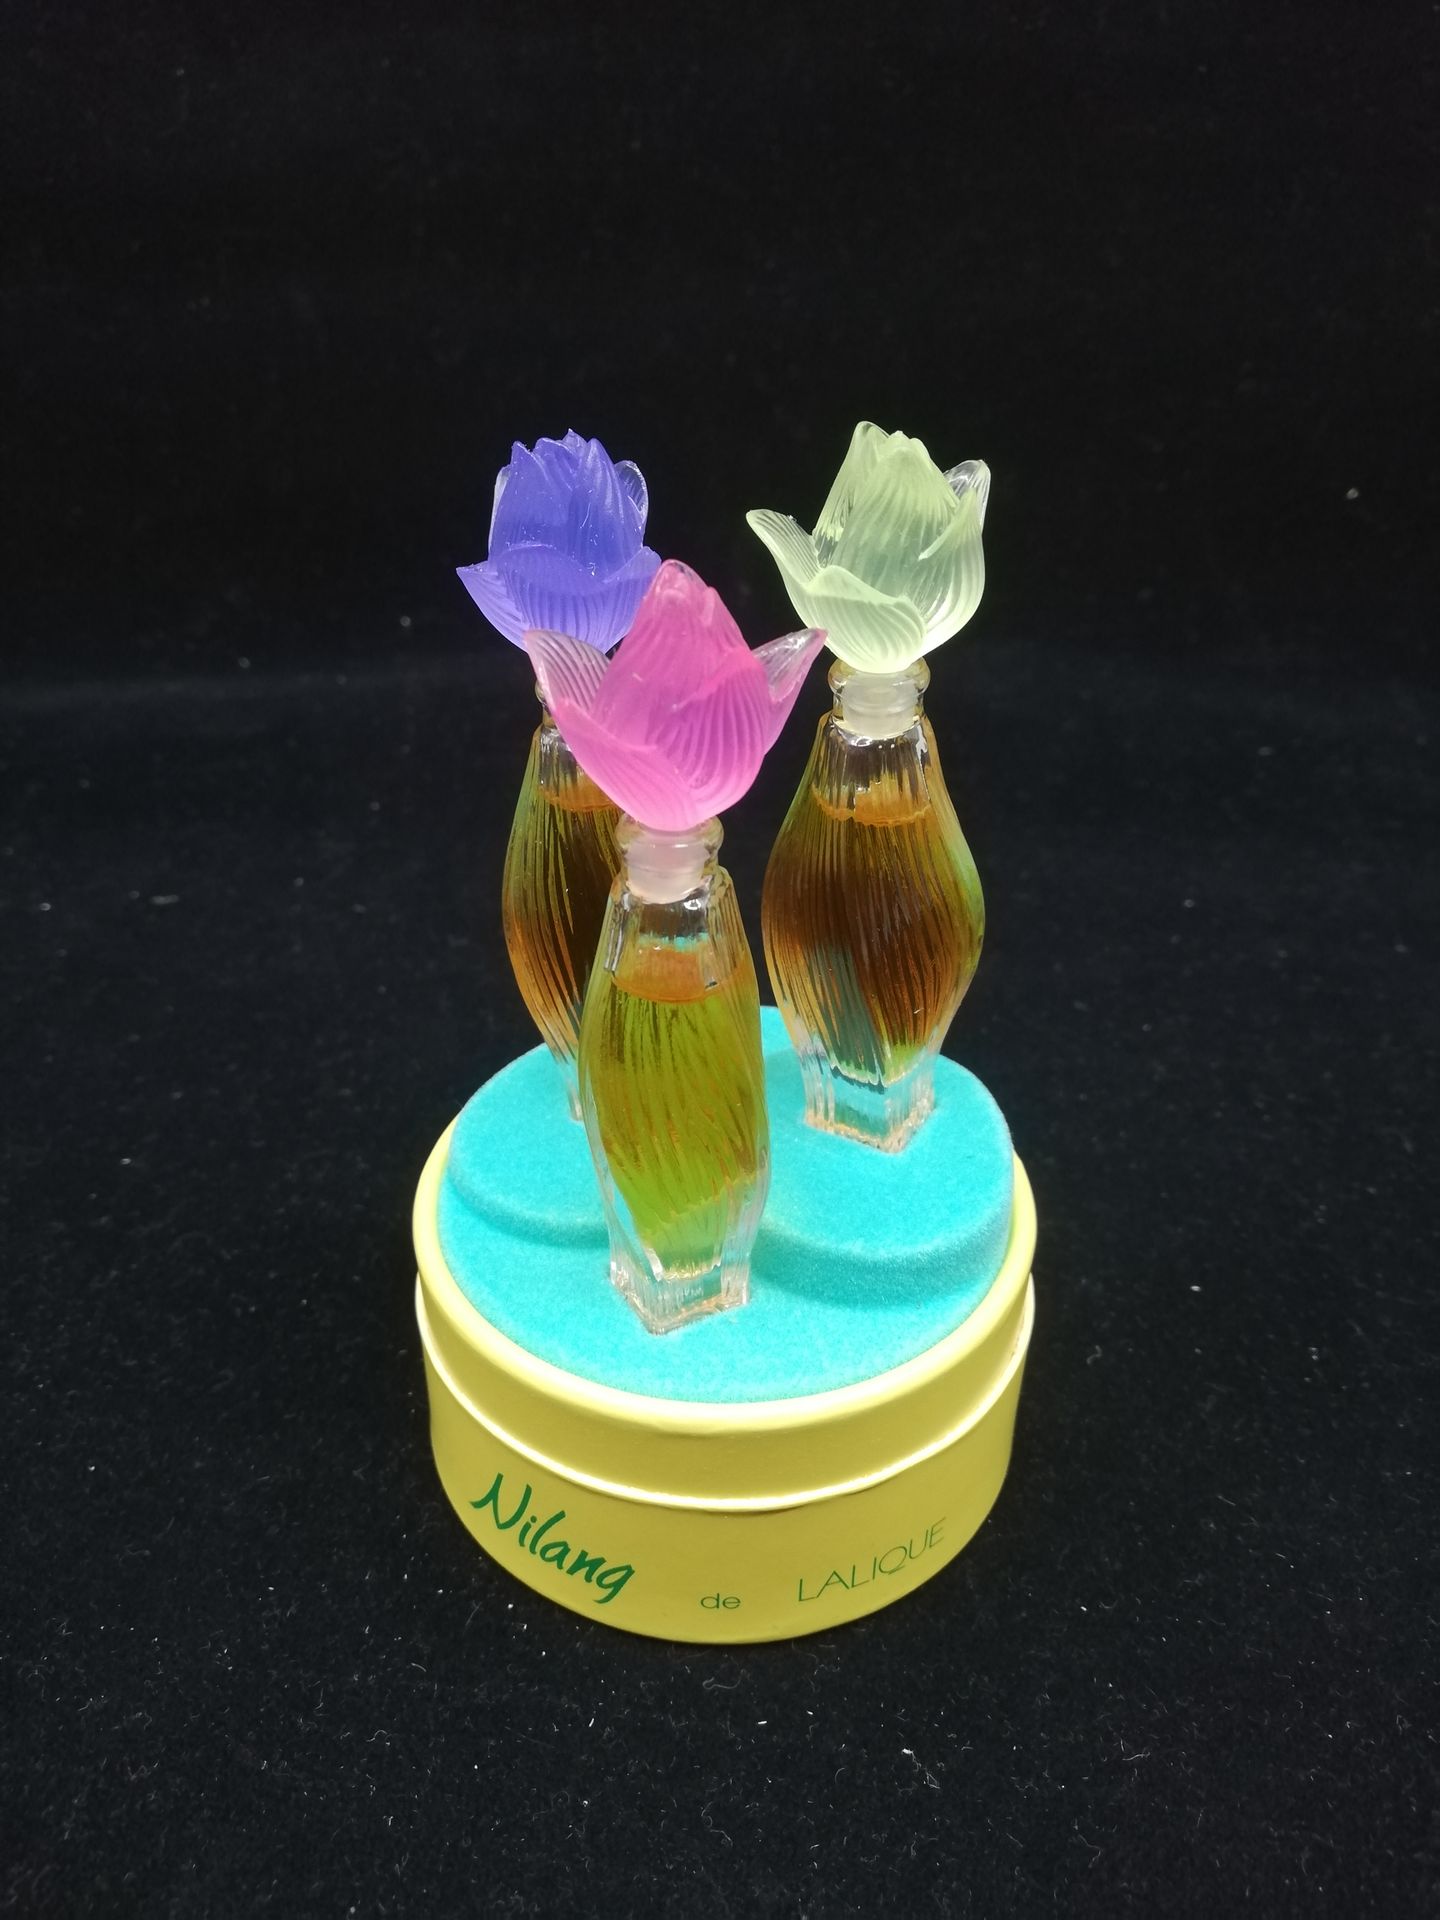 Null Lalique Parfums - "Nilang" - (1990er Jahre)

Set mit drei Diminutiven Parfu&hellip;